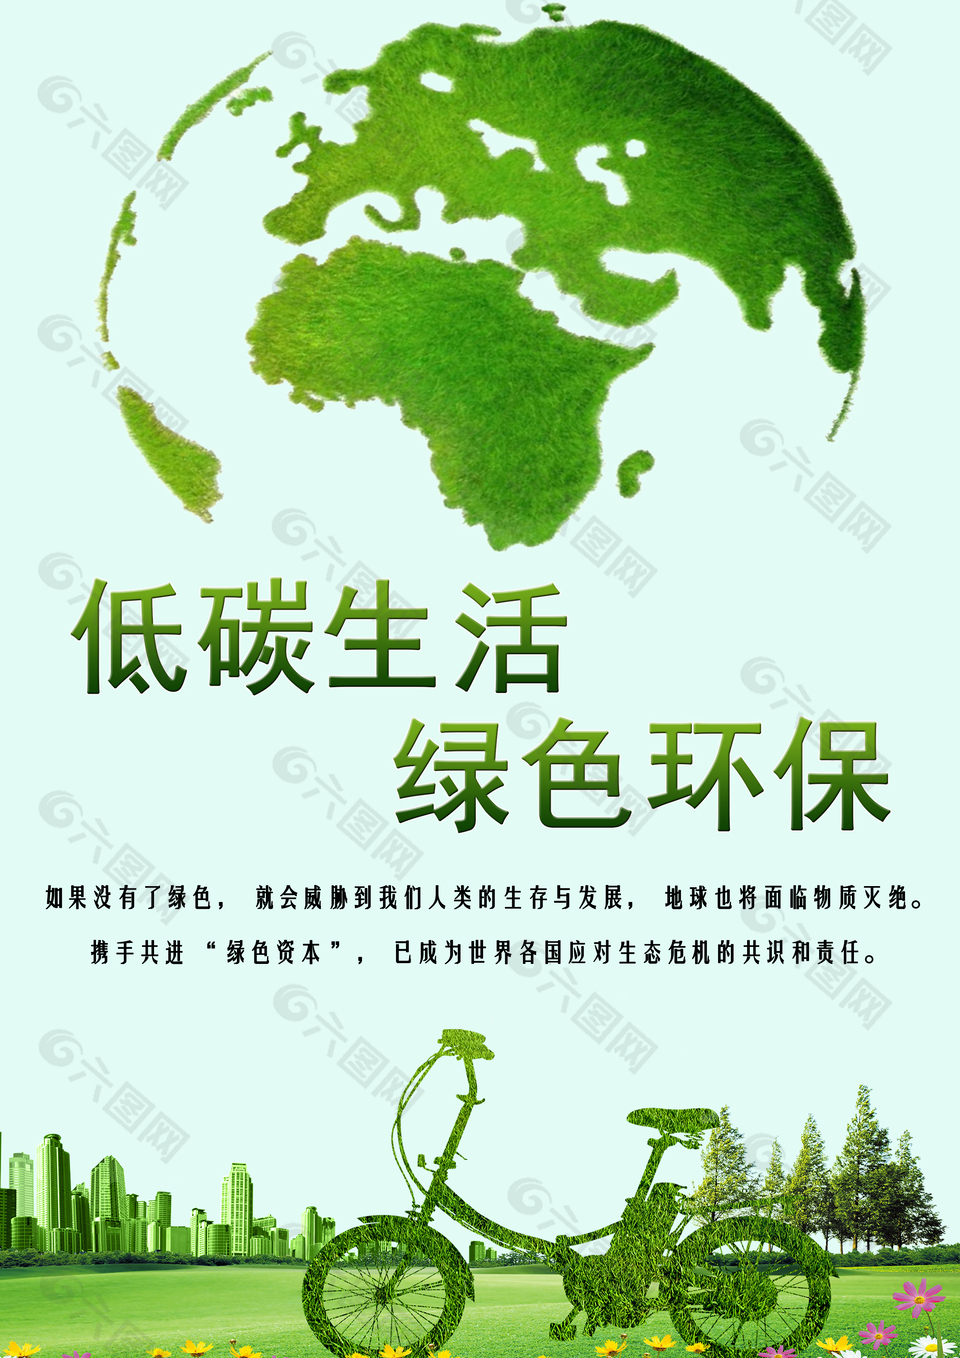 绿色环保低碳生活海报